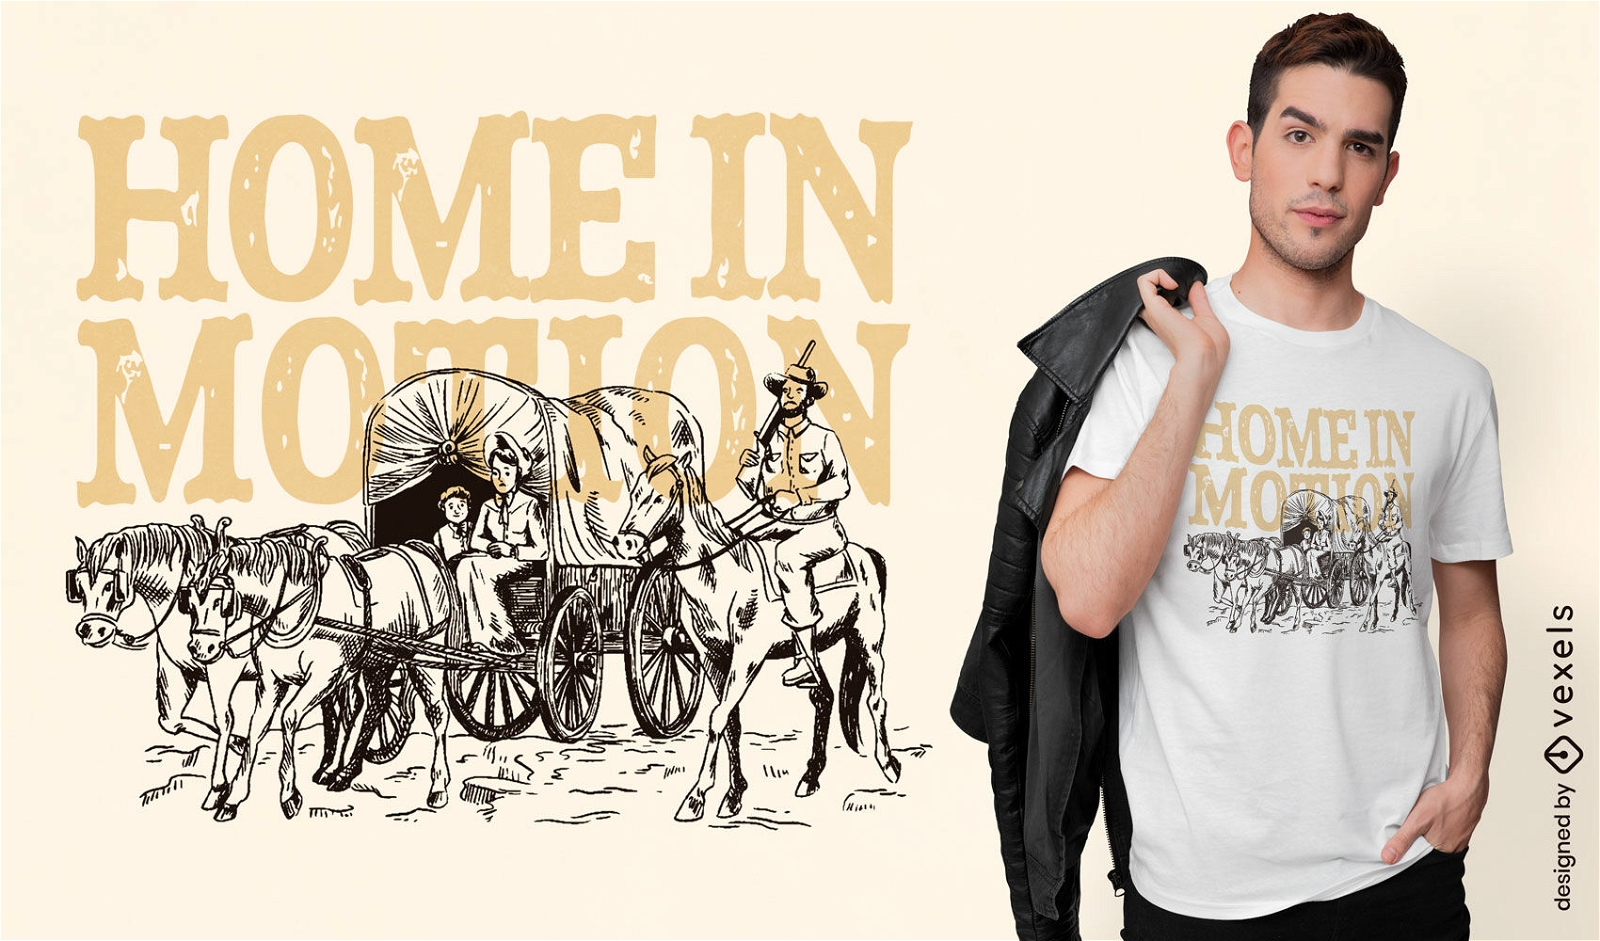 Casa em movimento design de camiseta de cowboy vintage